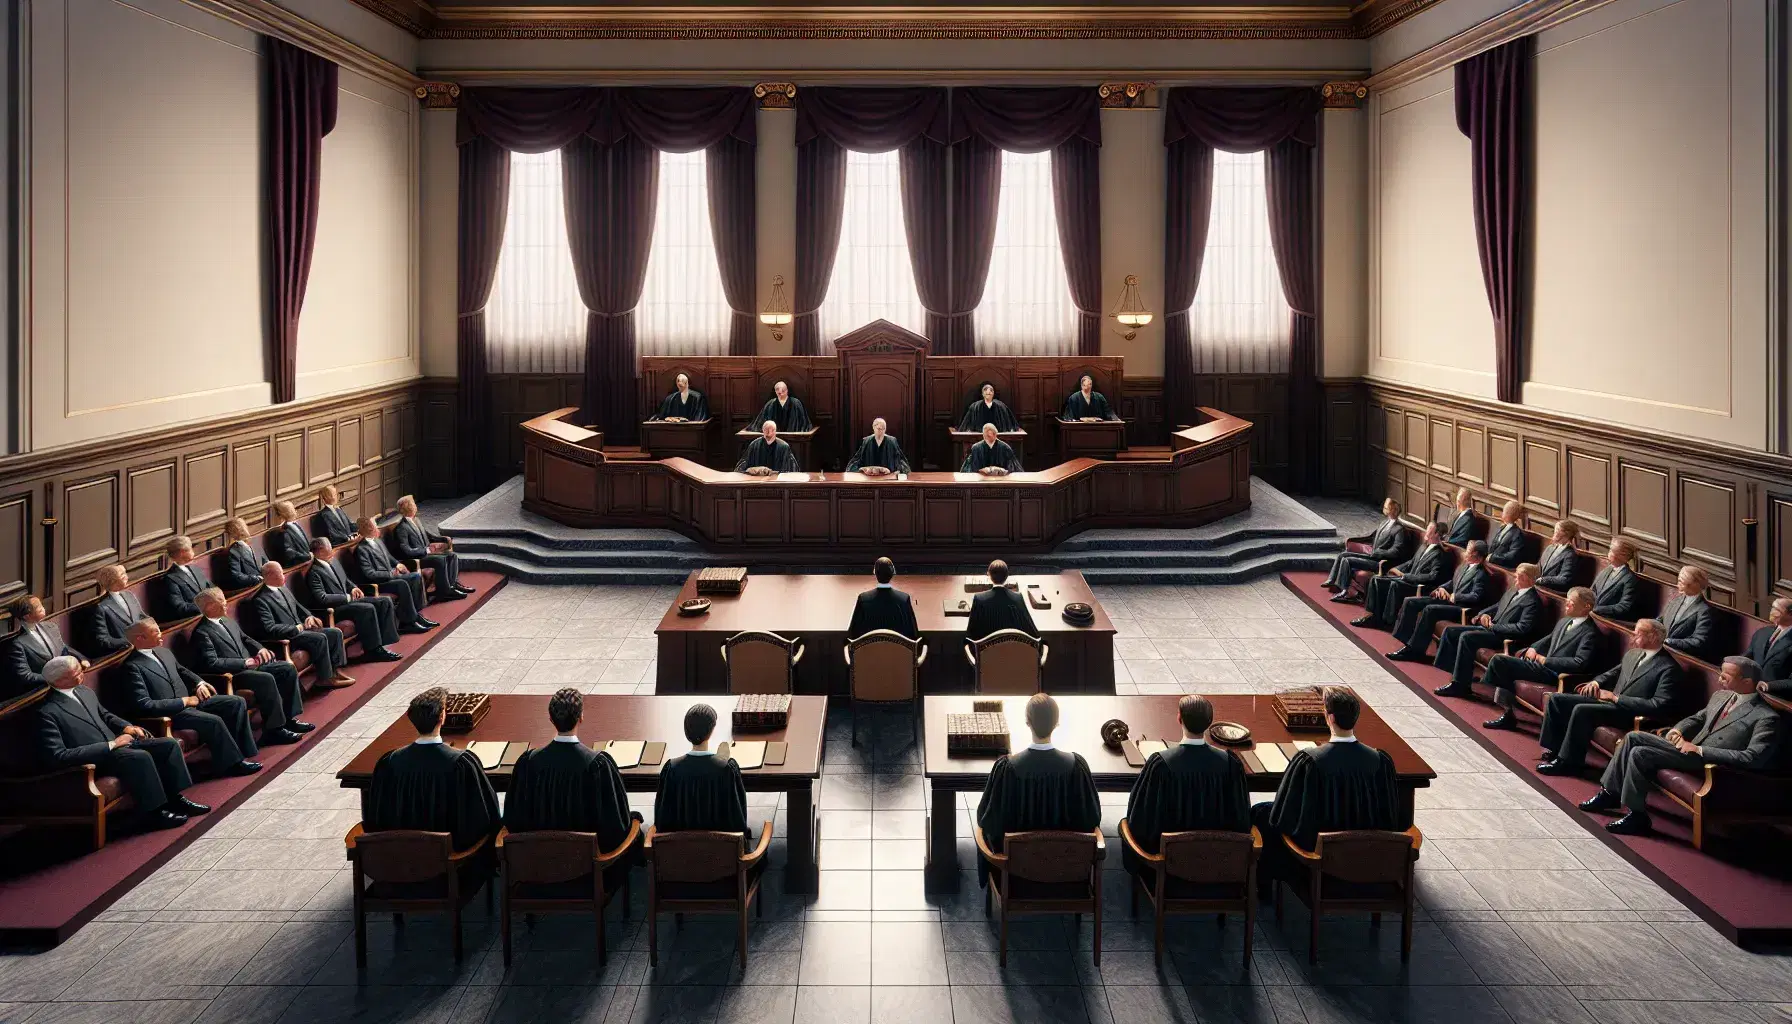 Sala de tribunal con tres jueces en togas detrás de una mesa larga, abogados enfrentados en mesas menores y bancos de madera para espectadores.